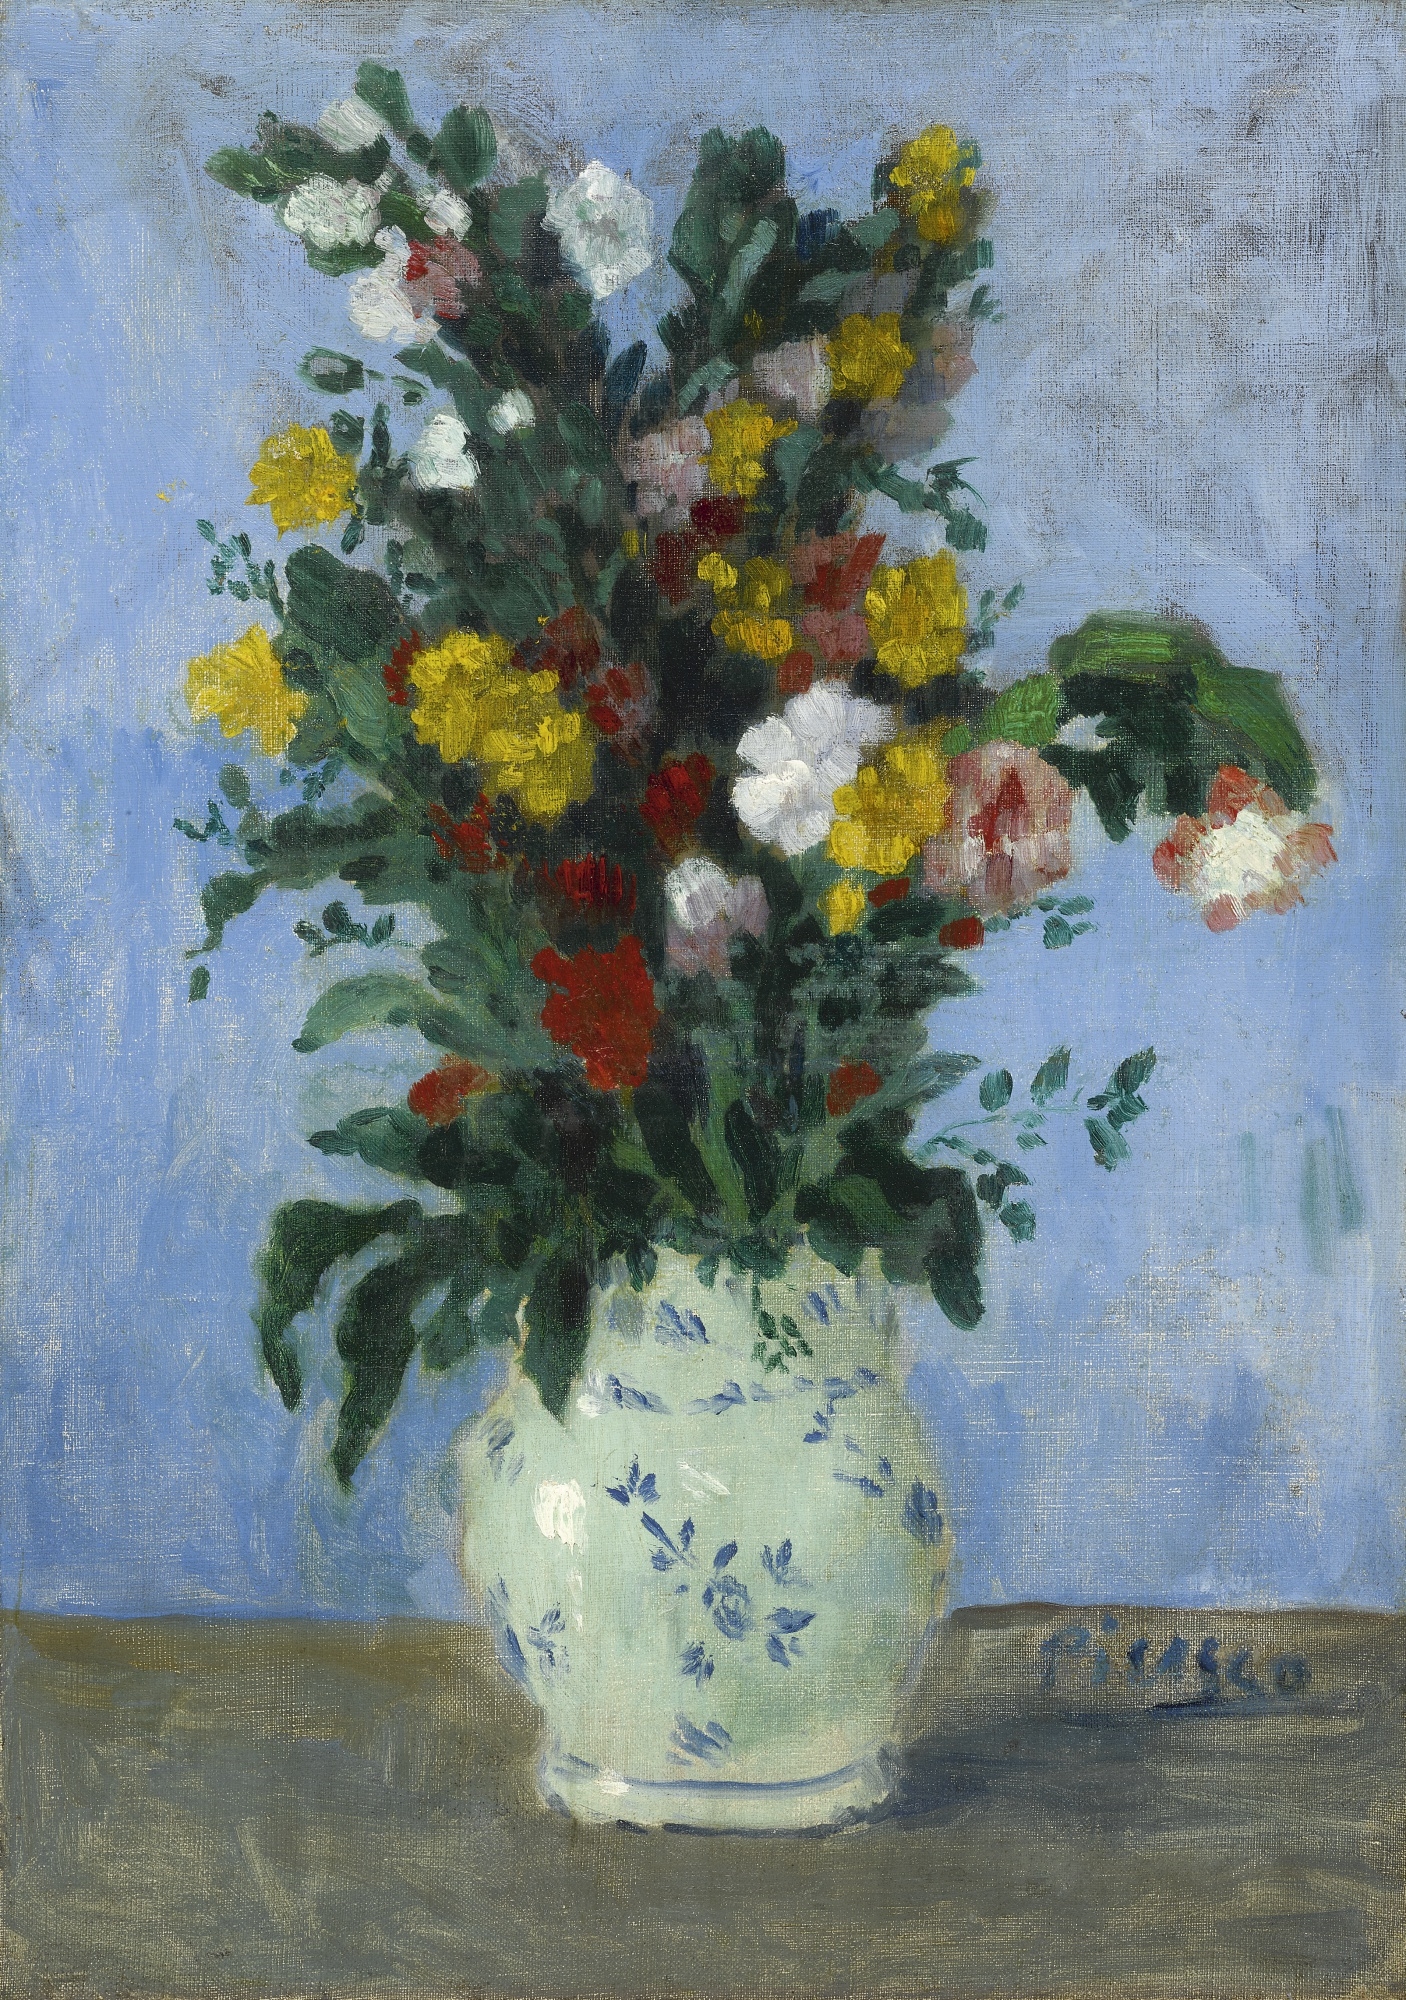 Fleurs dans un vase by Pablo Picasso, 1901